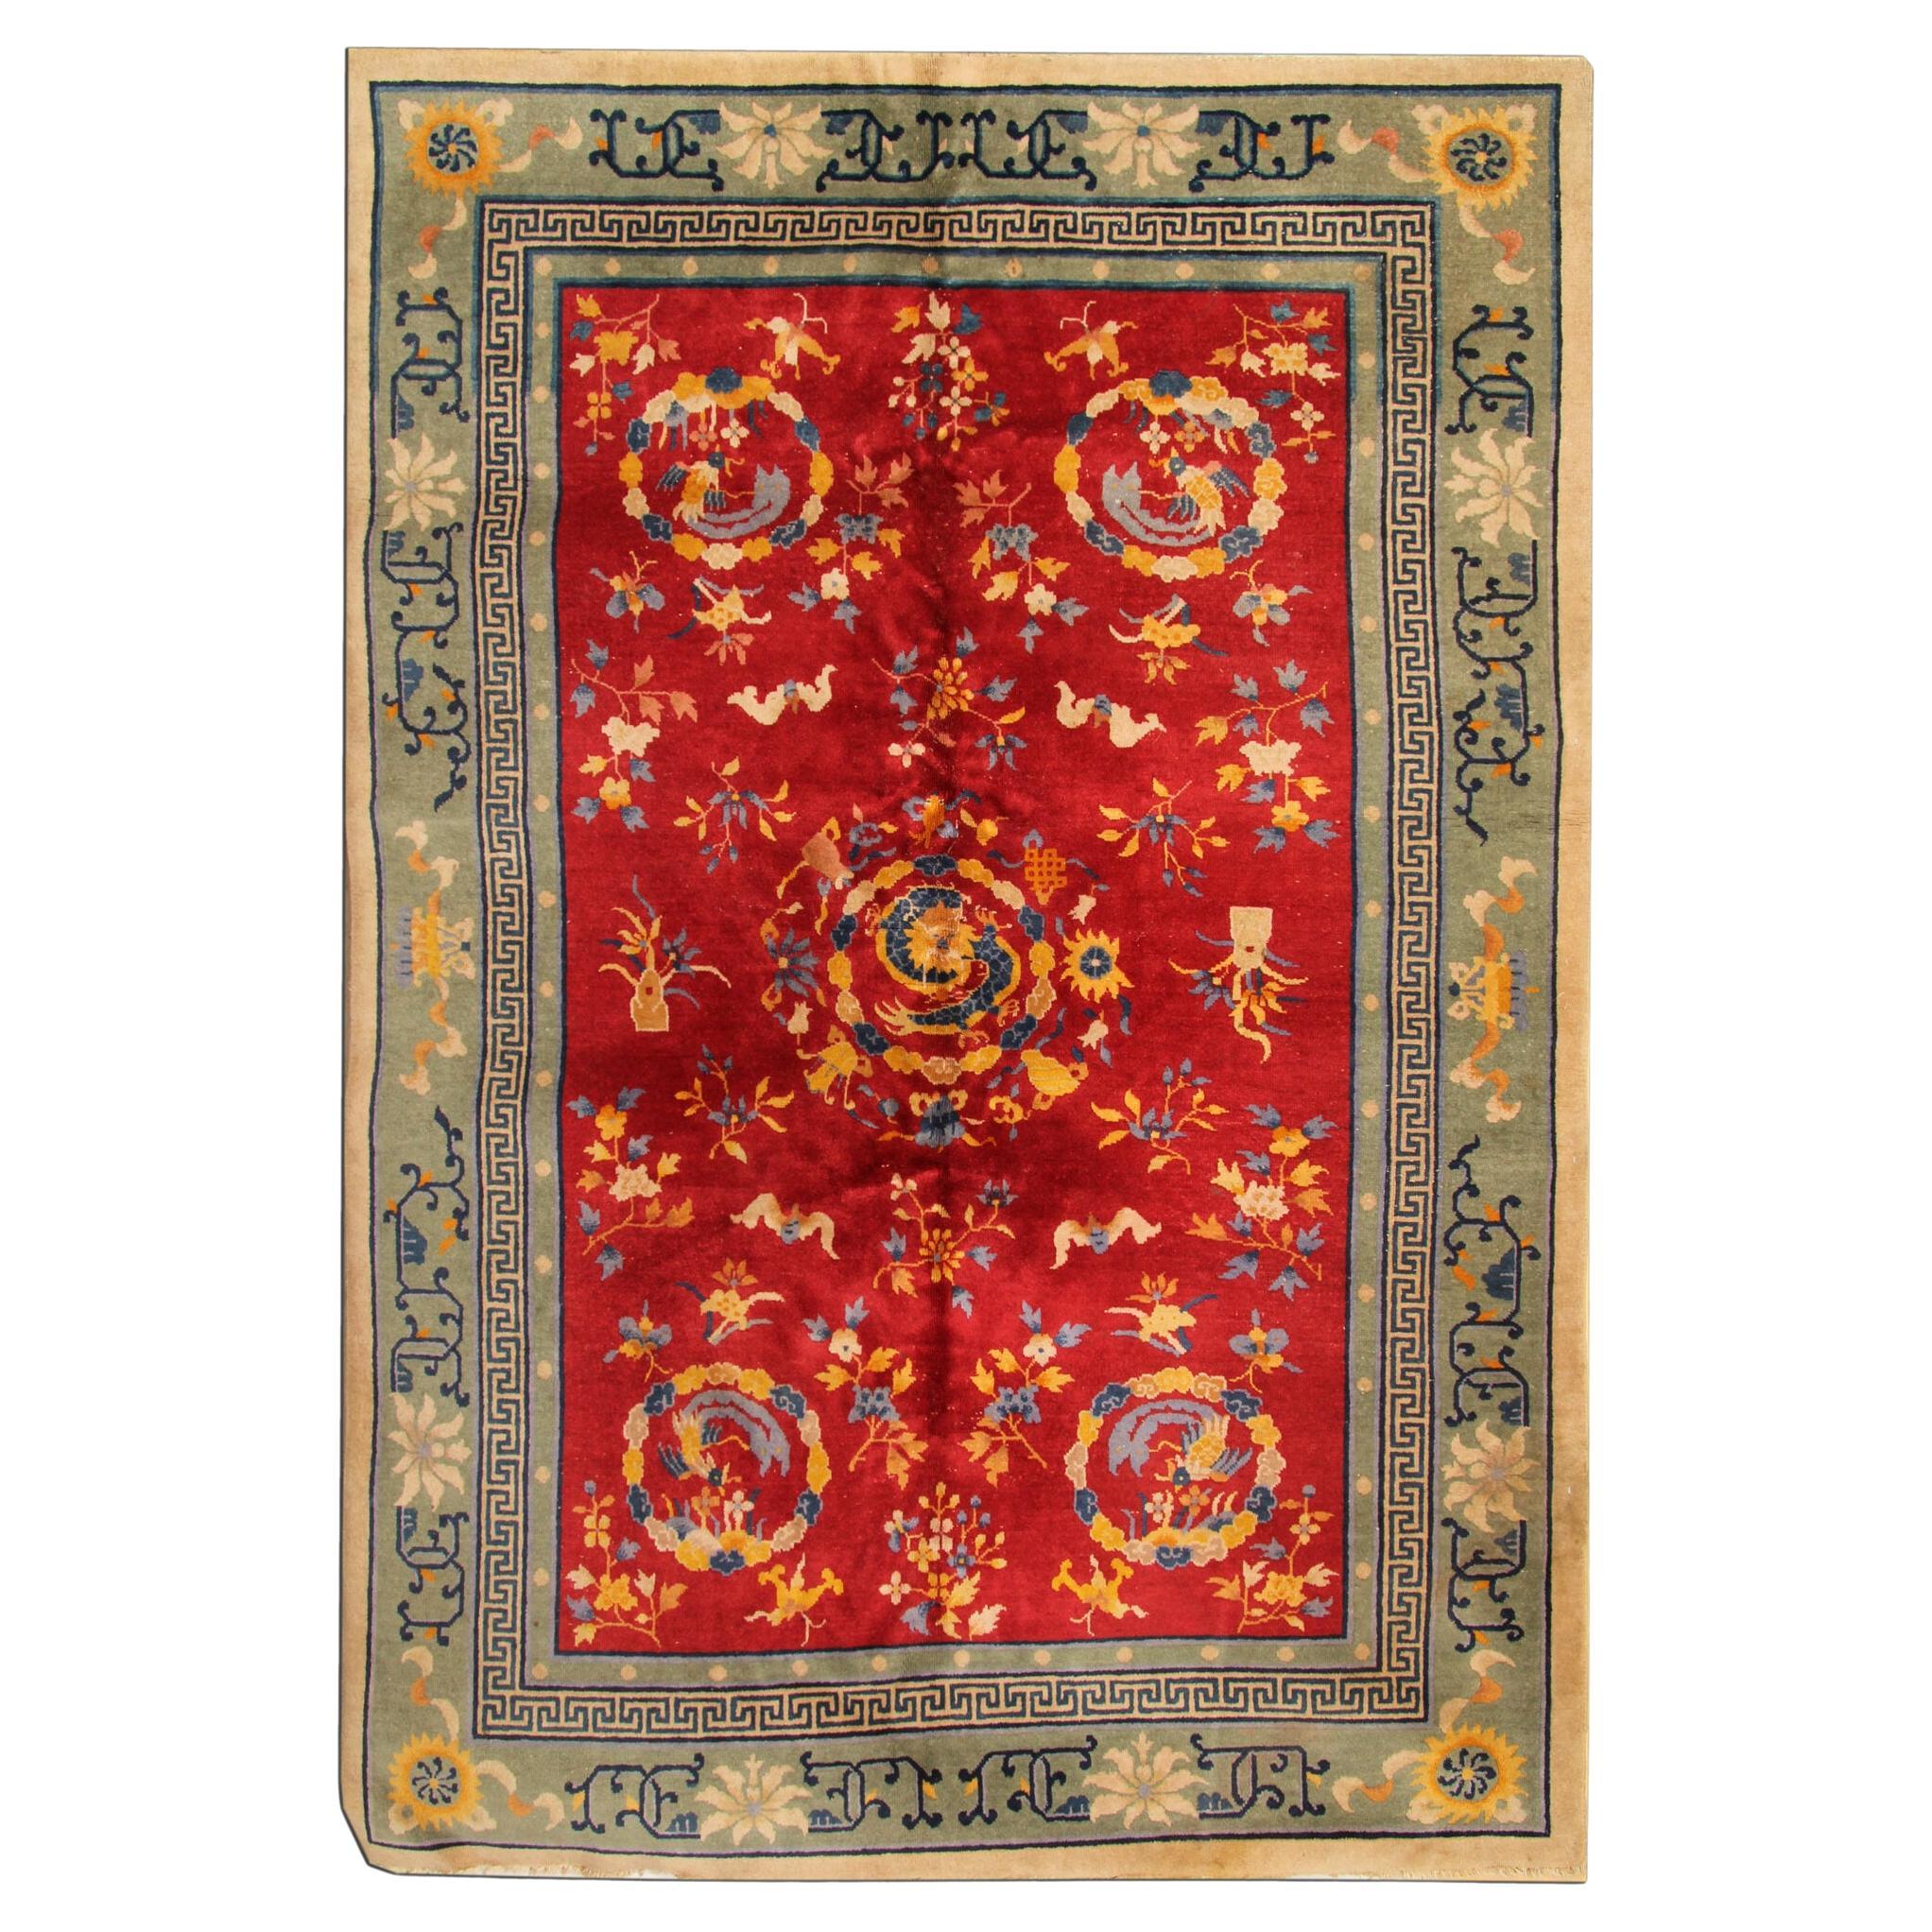 Roter antiker Art Deco Vintage Teppich Orientalischer handgefertigter Teppich Chinesischer Teppich CHR6 